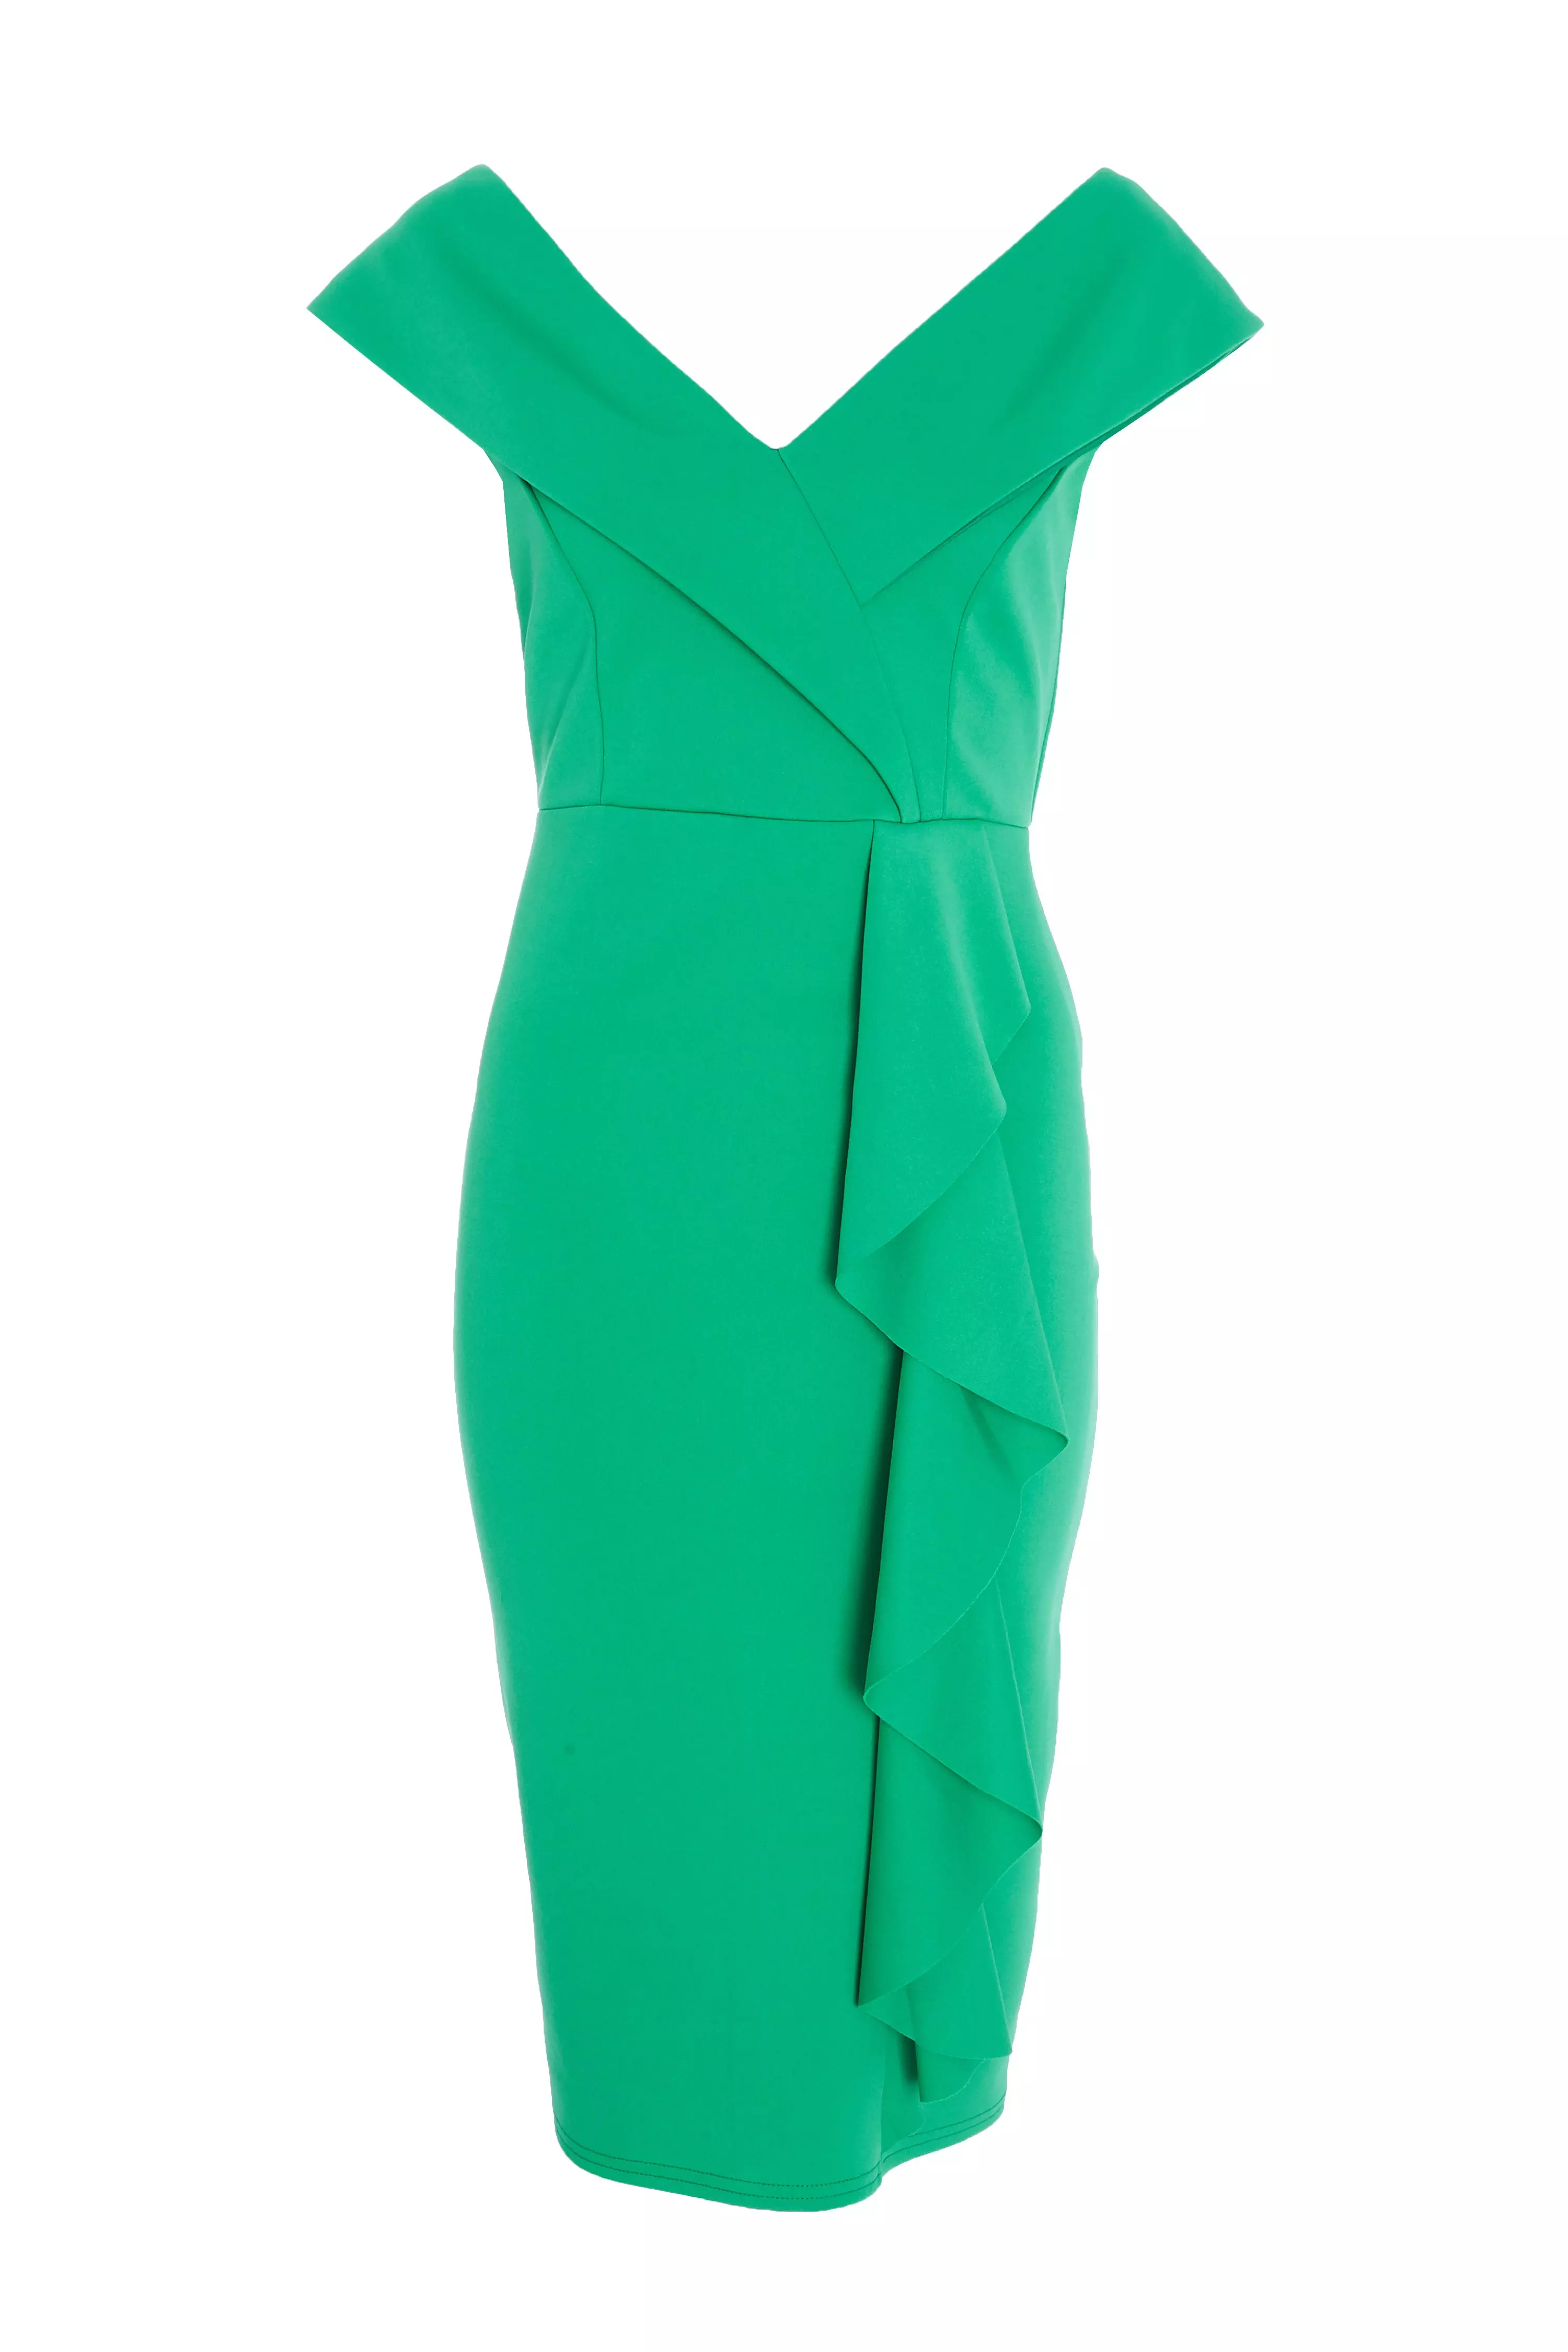 Green Frill Midi Dress - QUIZ Clothing